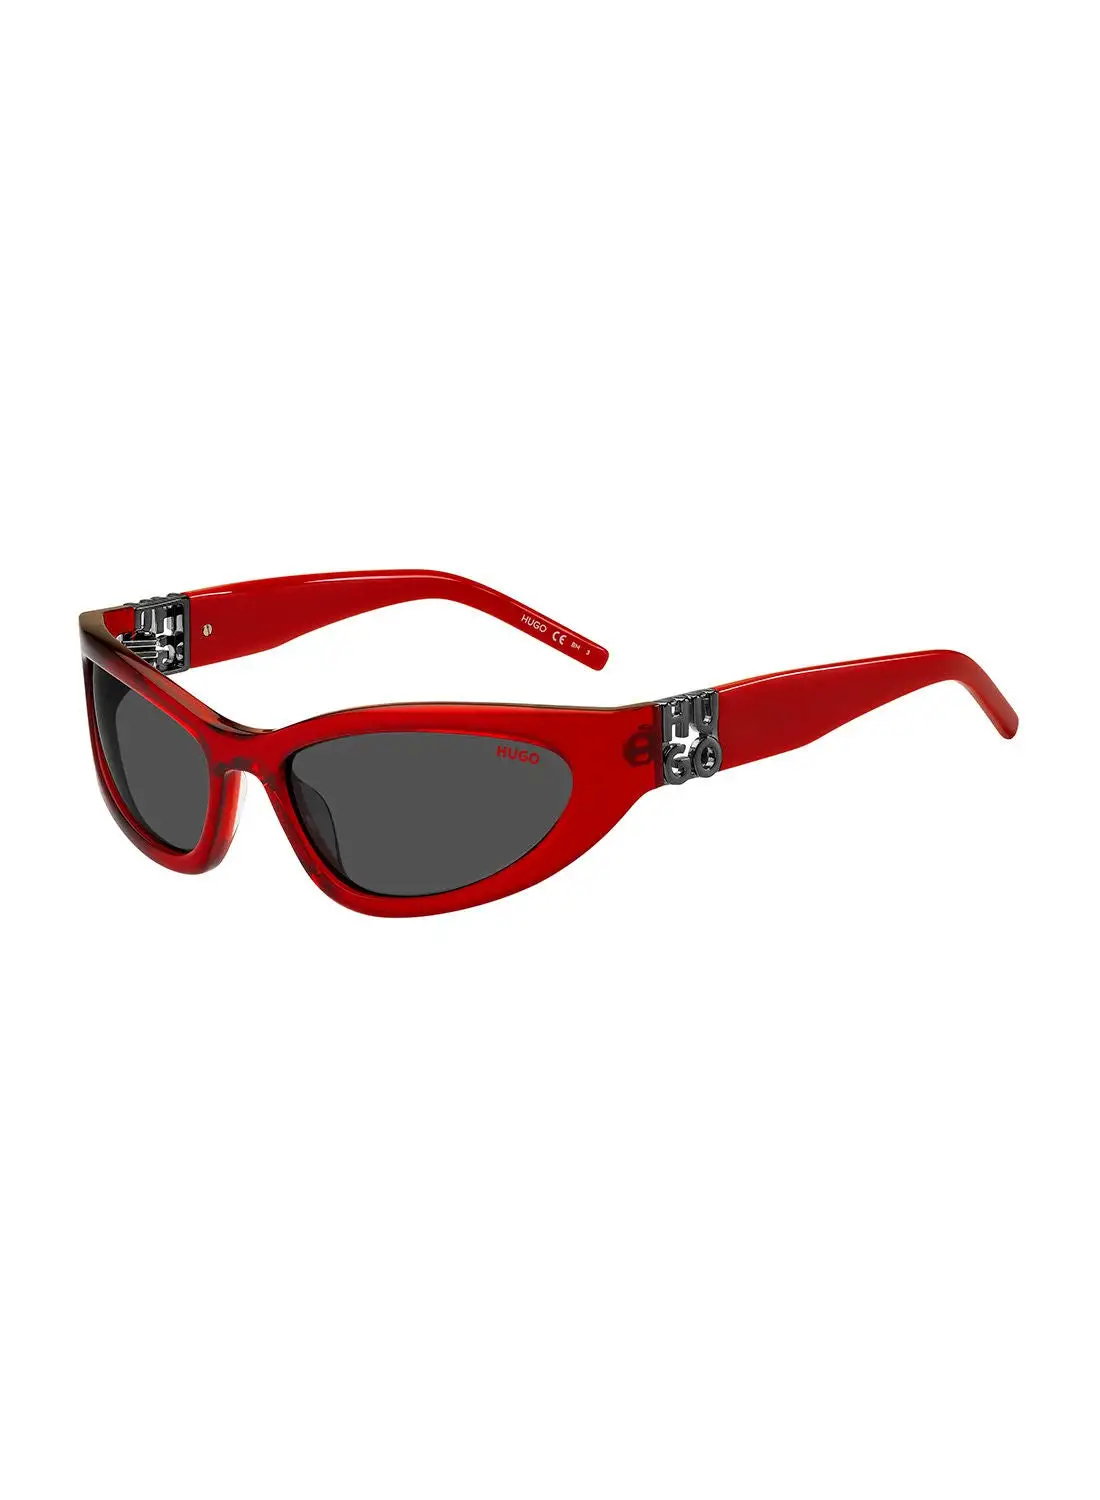 HUGO نظارة شمسية للرجال بإطار عين القطة للحماية من الأشعة فوق البنفسجية - Hg 1255/S Red 59 - مقاس العدسة: 59 ملم